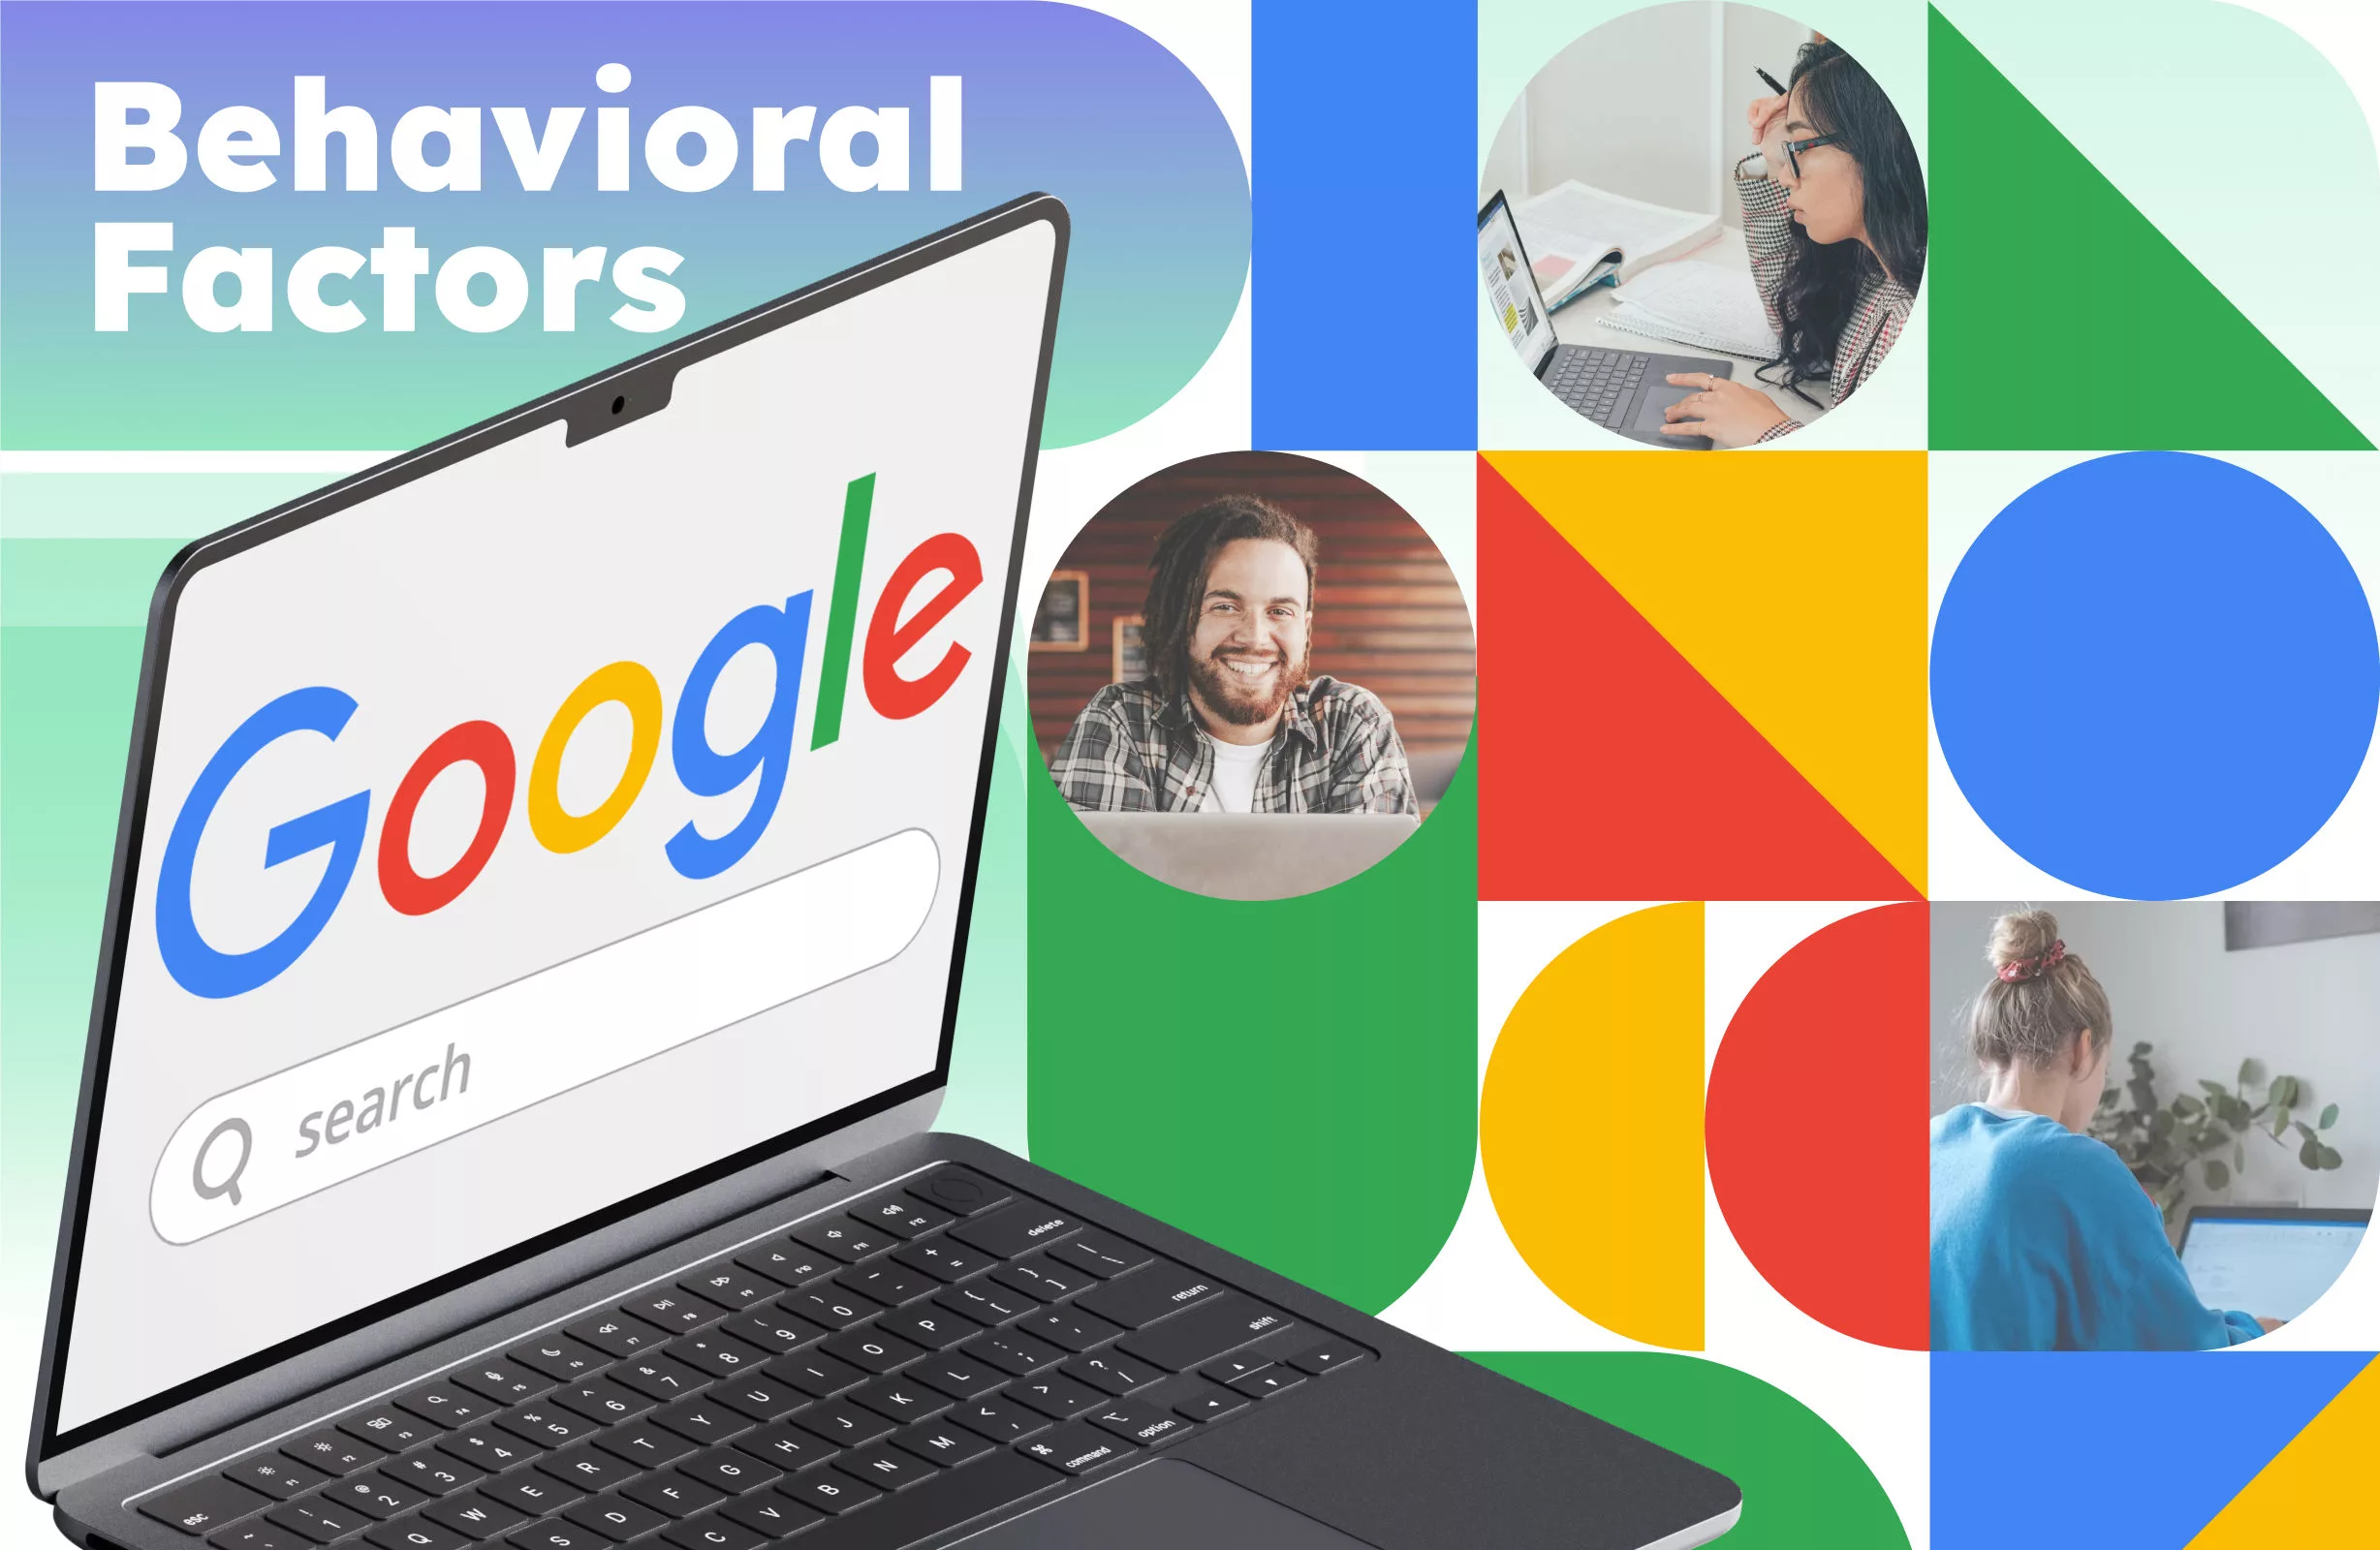 Les facteurs comportementaux de Google